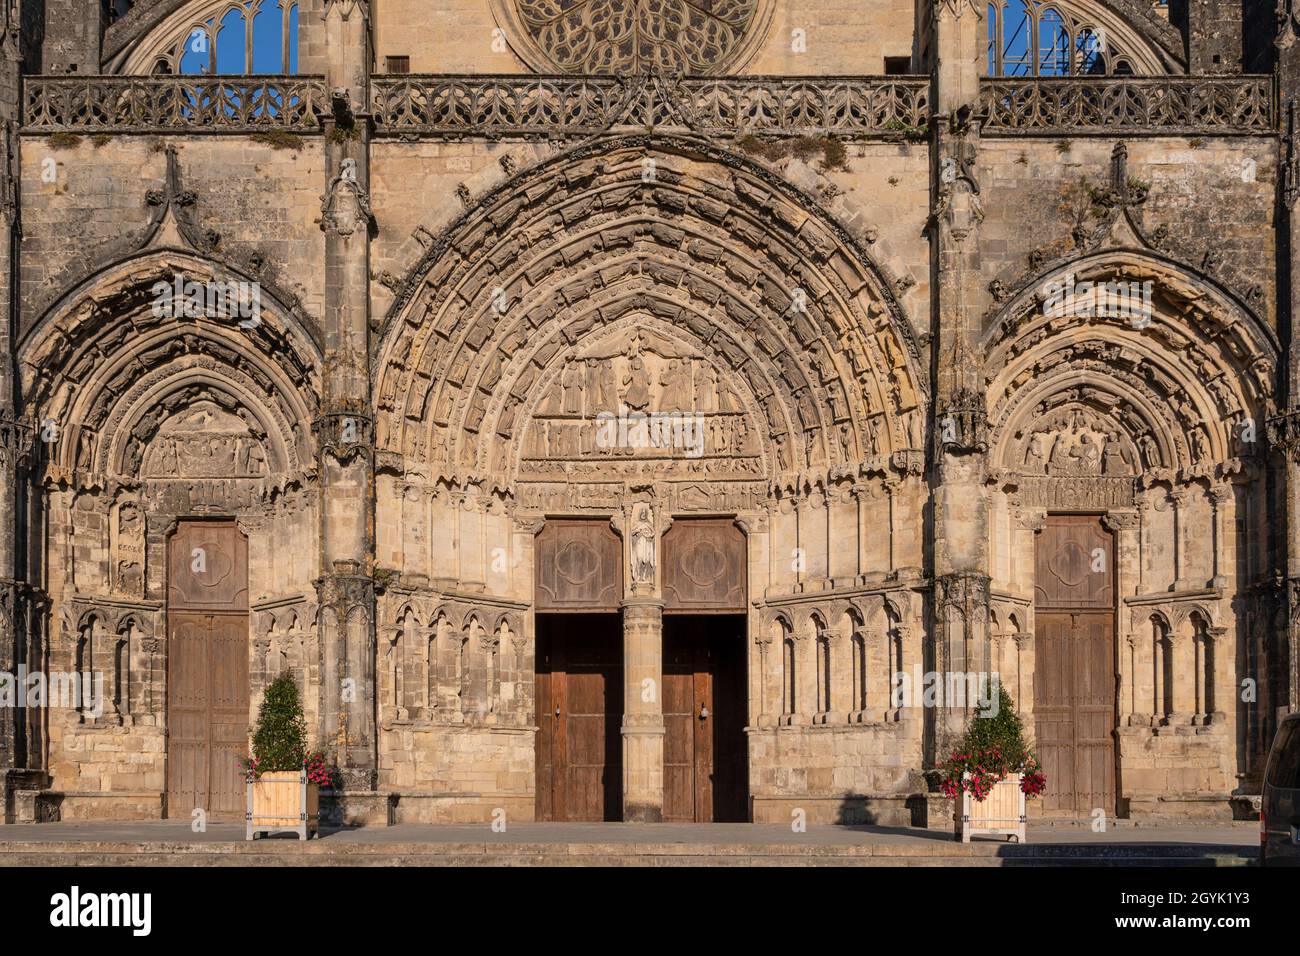 La catedral Cathédrale Saint-Jean-Baptiste en la Place de la Cathédrale en Bazas es parte de los Sitios Patrimonio de la Humanidad de las Rutas de Santiago de Foto de stock